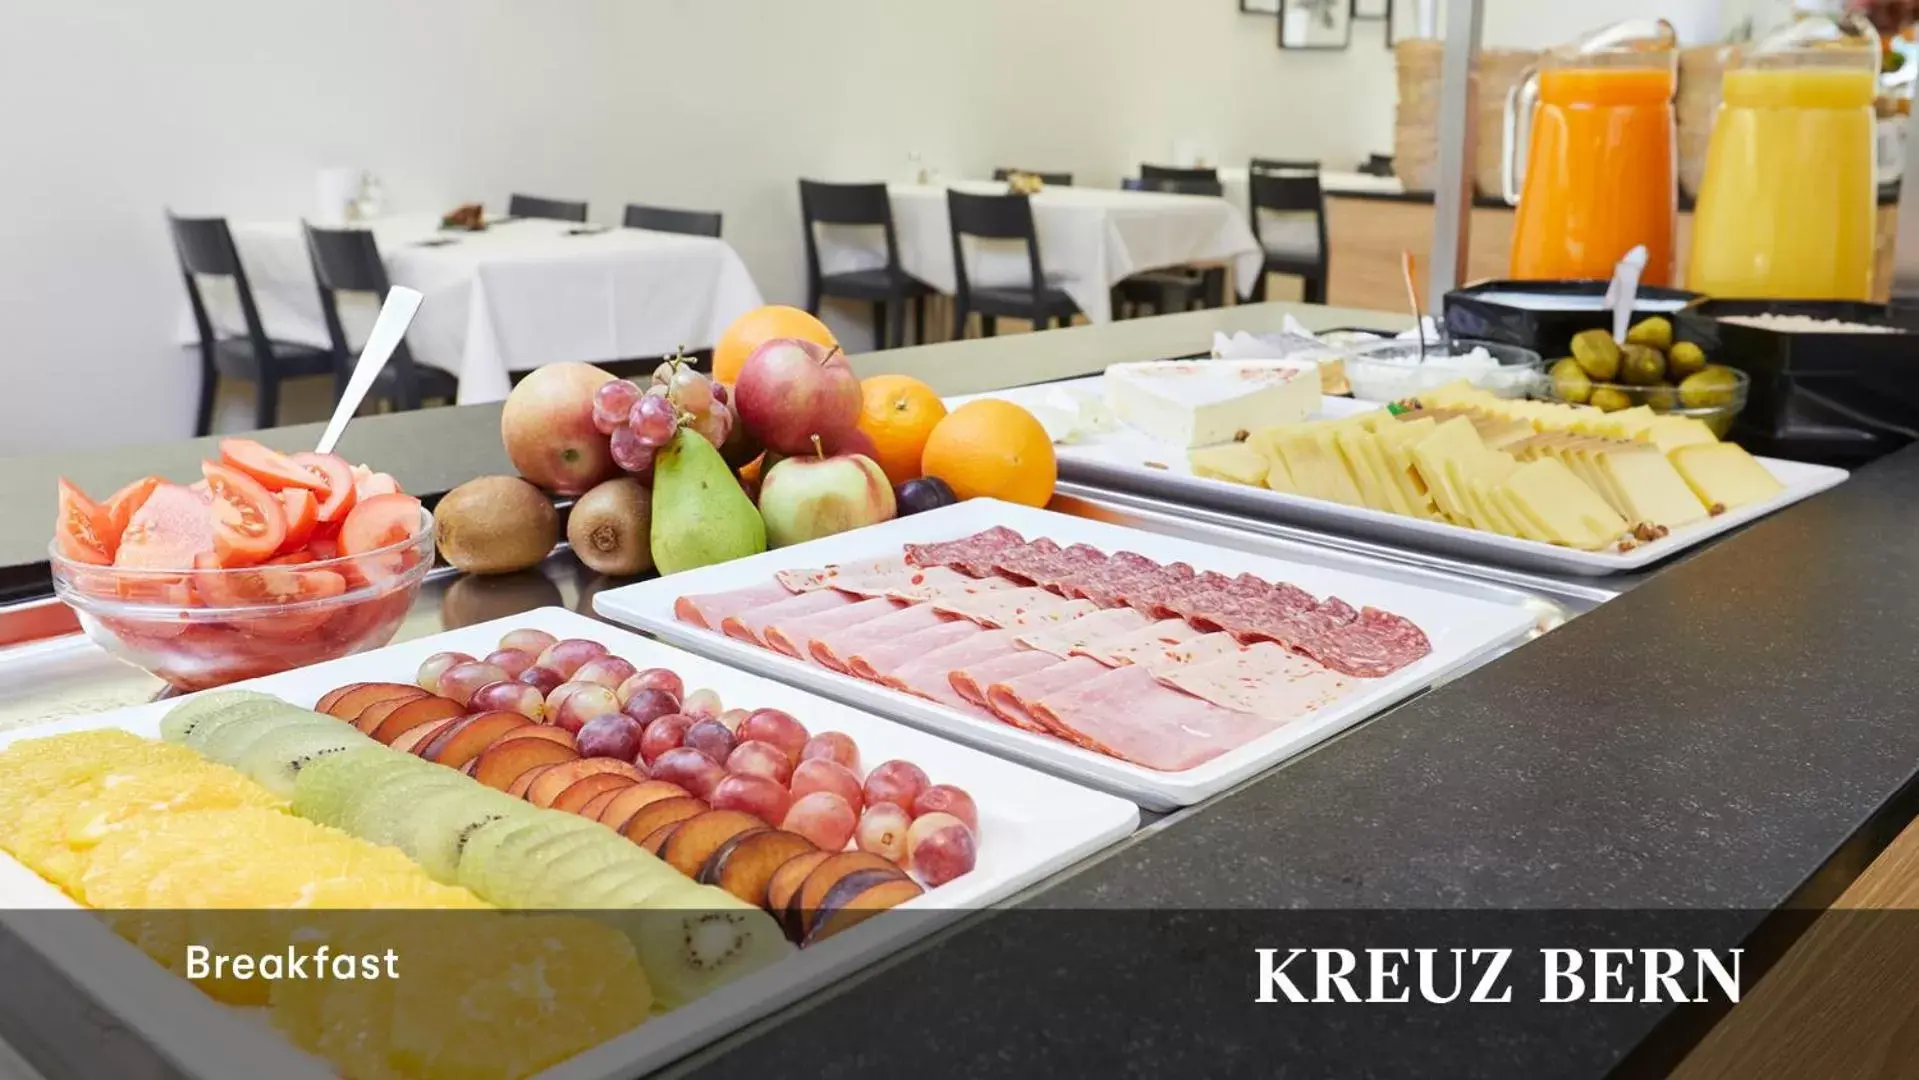 Buffet breakfast in Kreuz Bern Modern City Hotel